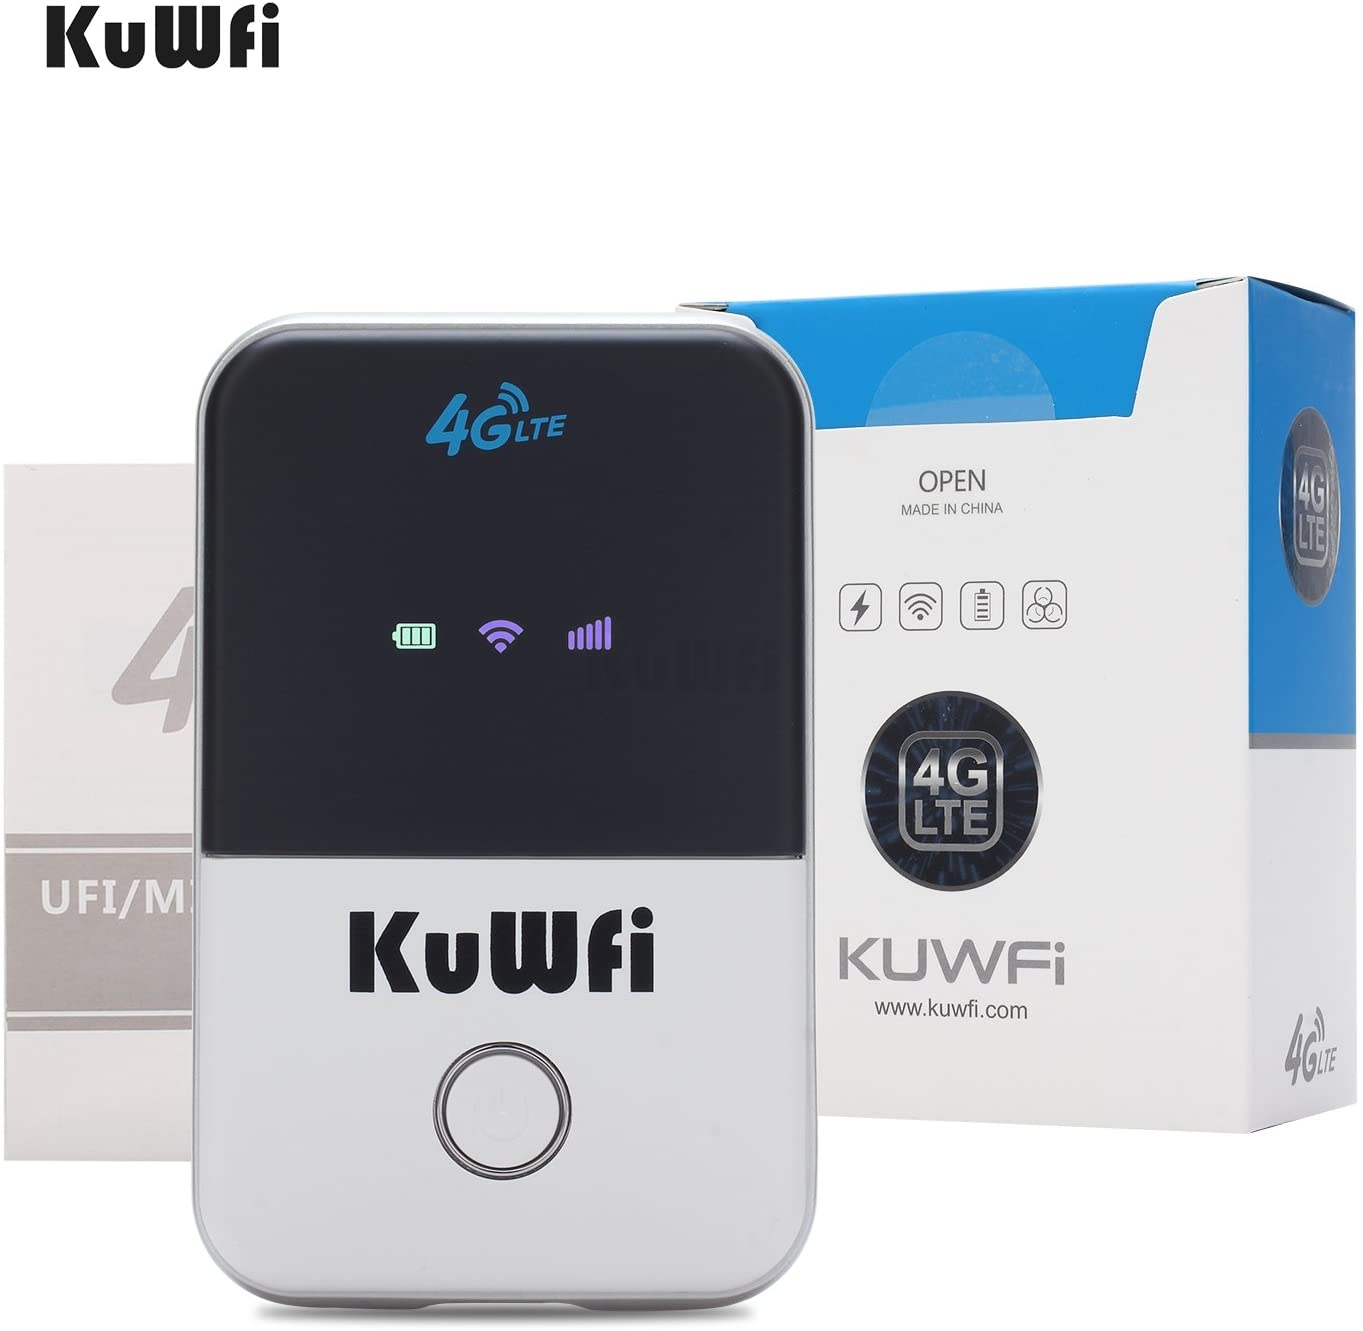 Kuwfi G Lte Mobile Wifi Hotspot Unlocked Travel Partner Wireless G